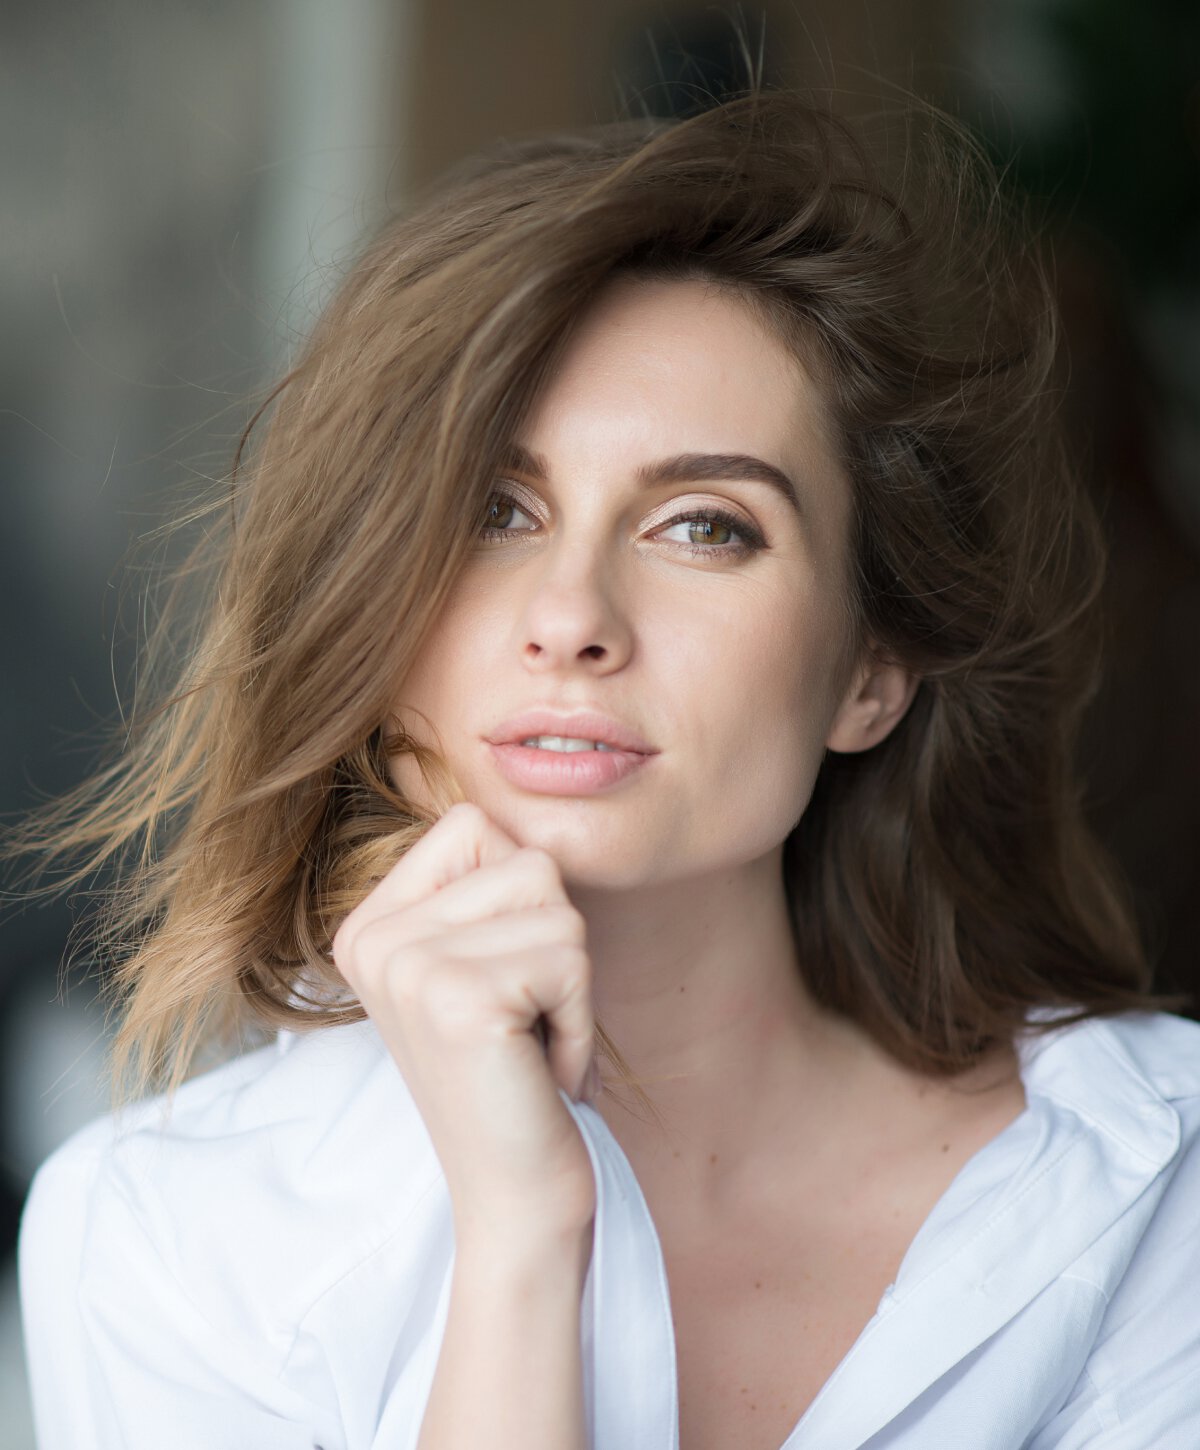 Murrieta Medspa model wearing a white shirt